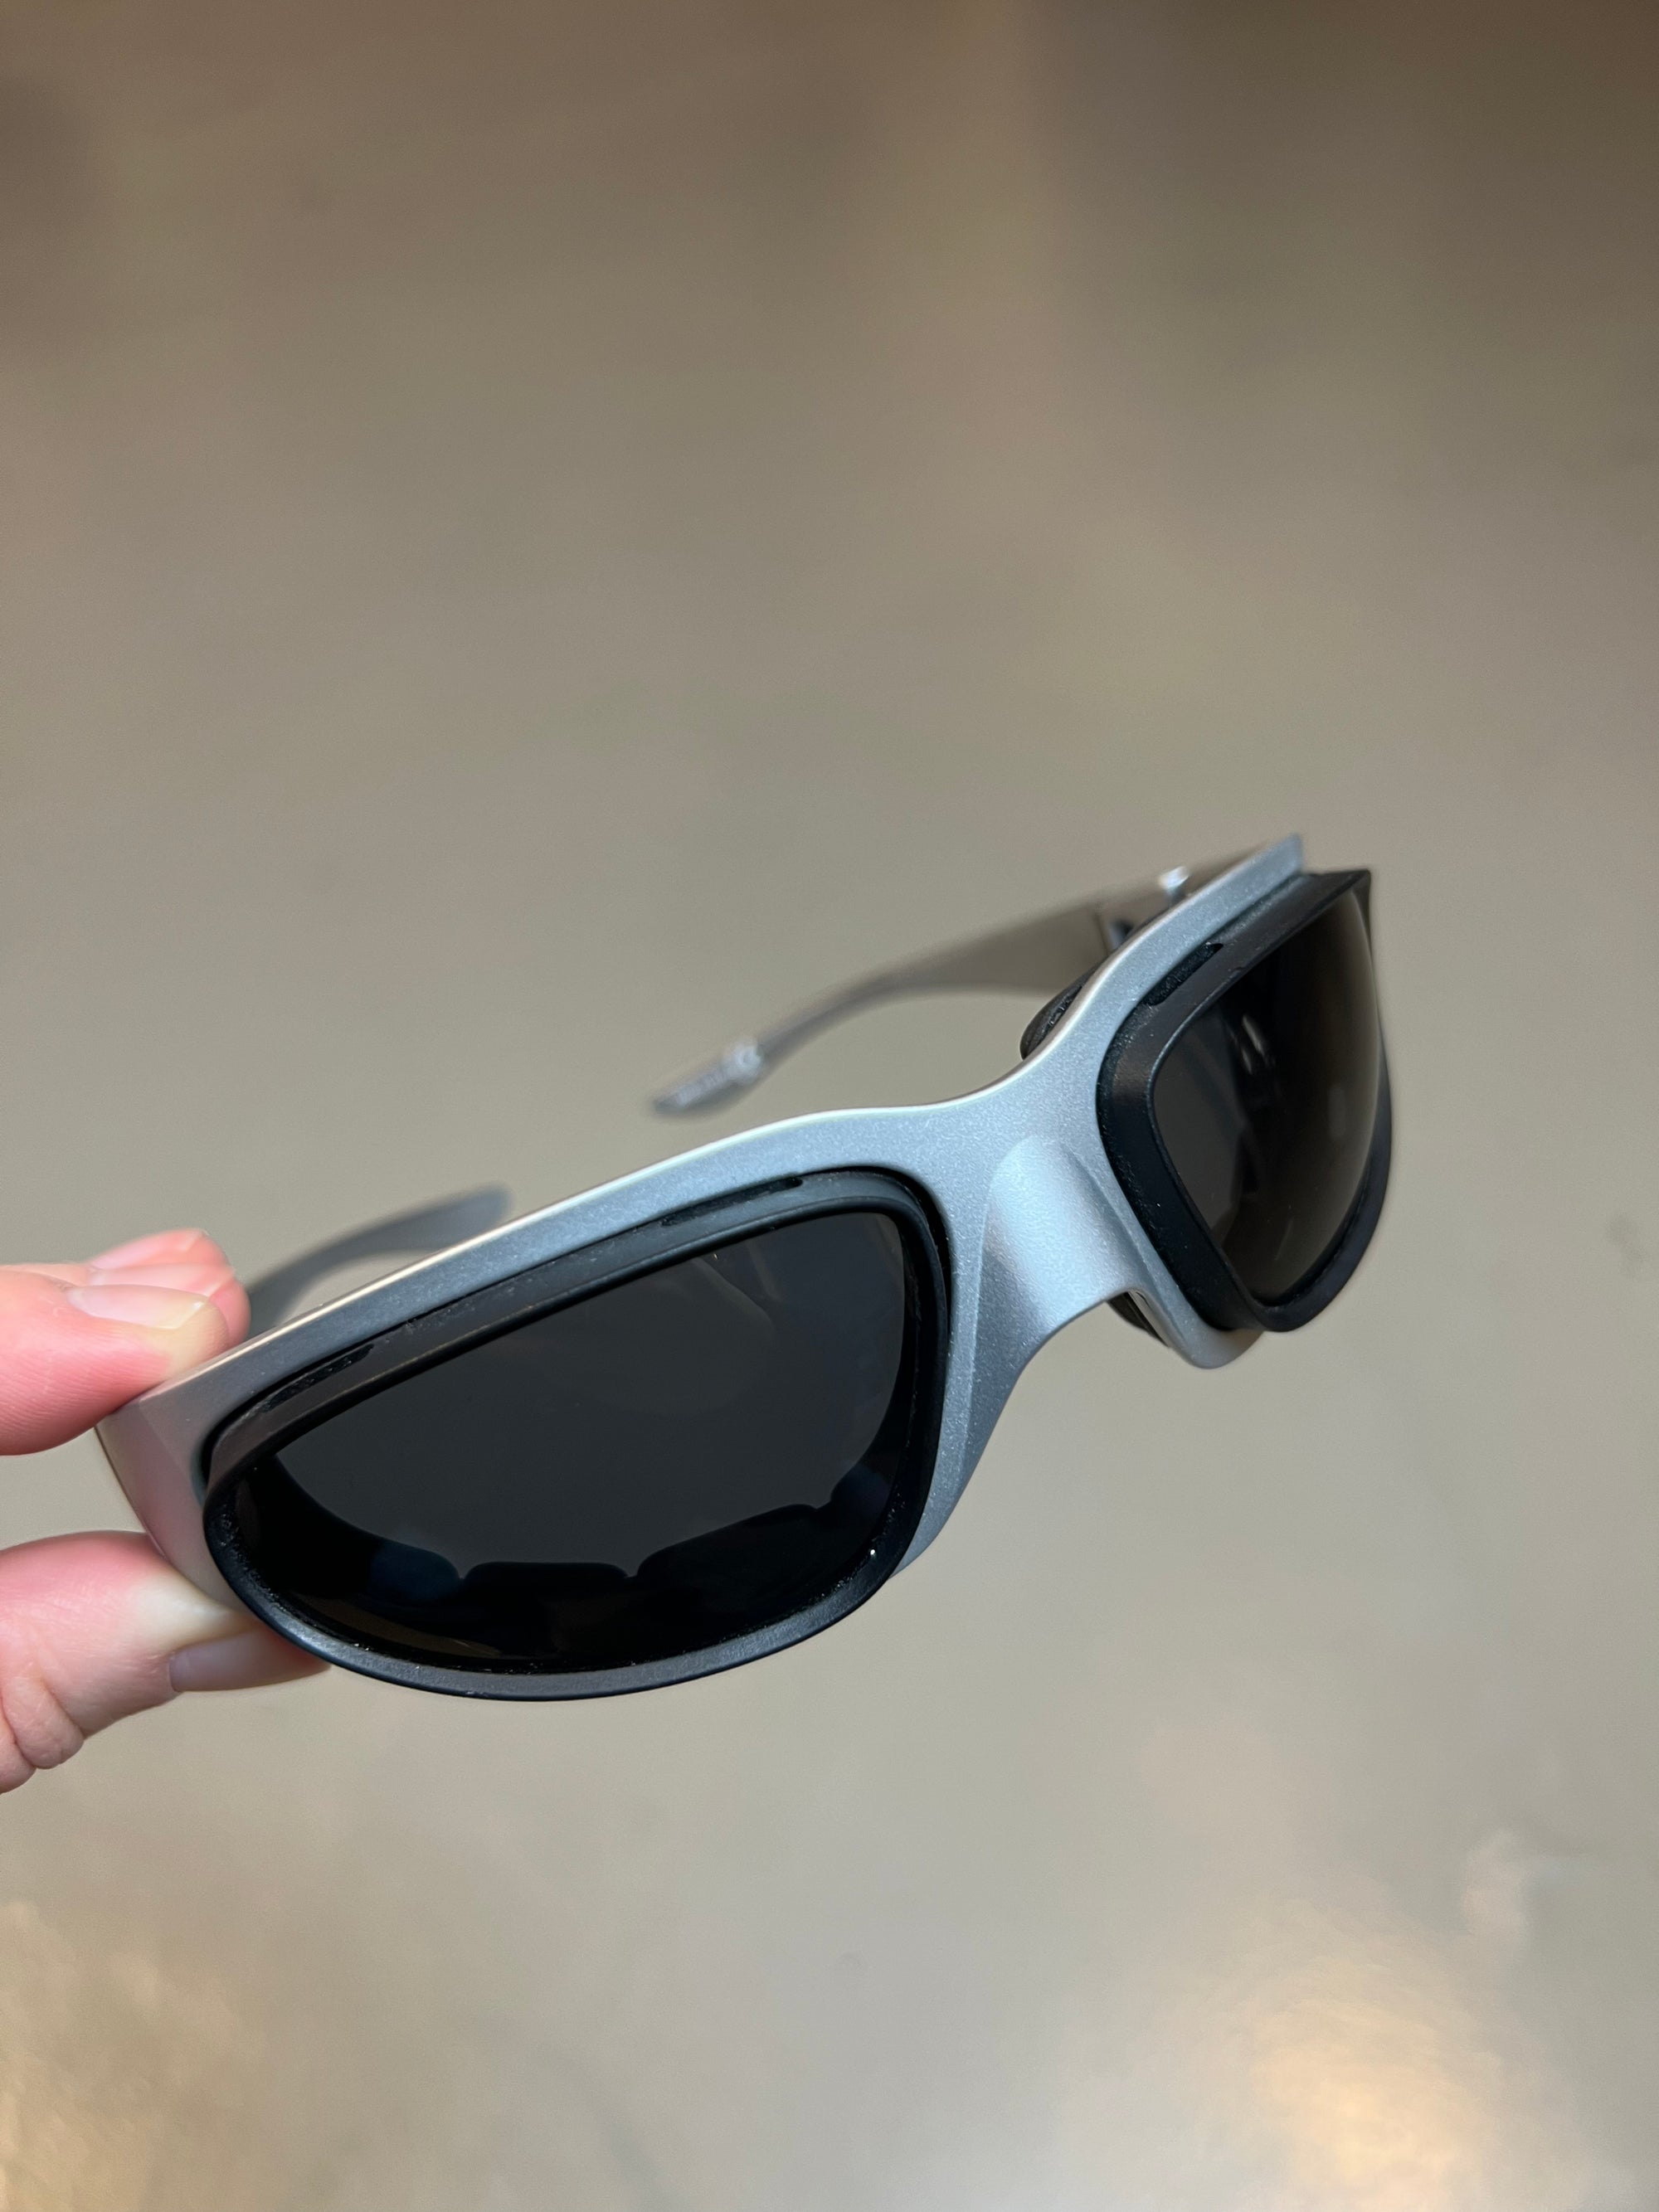 Produktbild von einer Baruffaldi Y2K Sonnenbrille vor grauem Hintergrund.